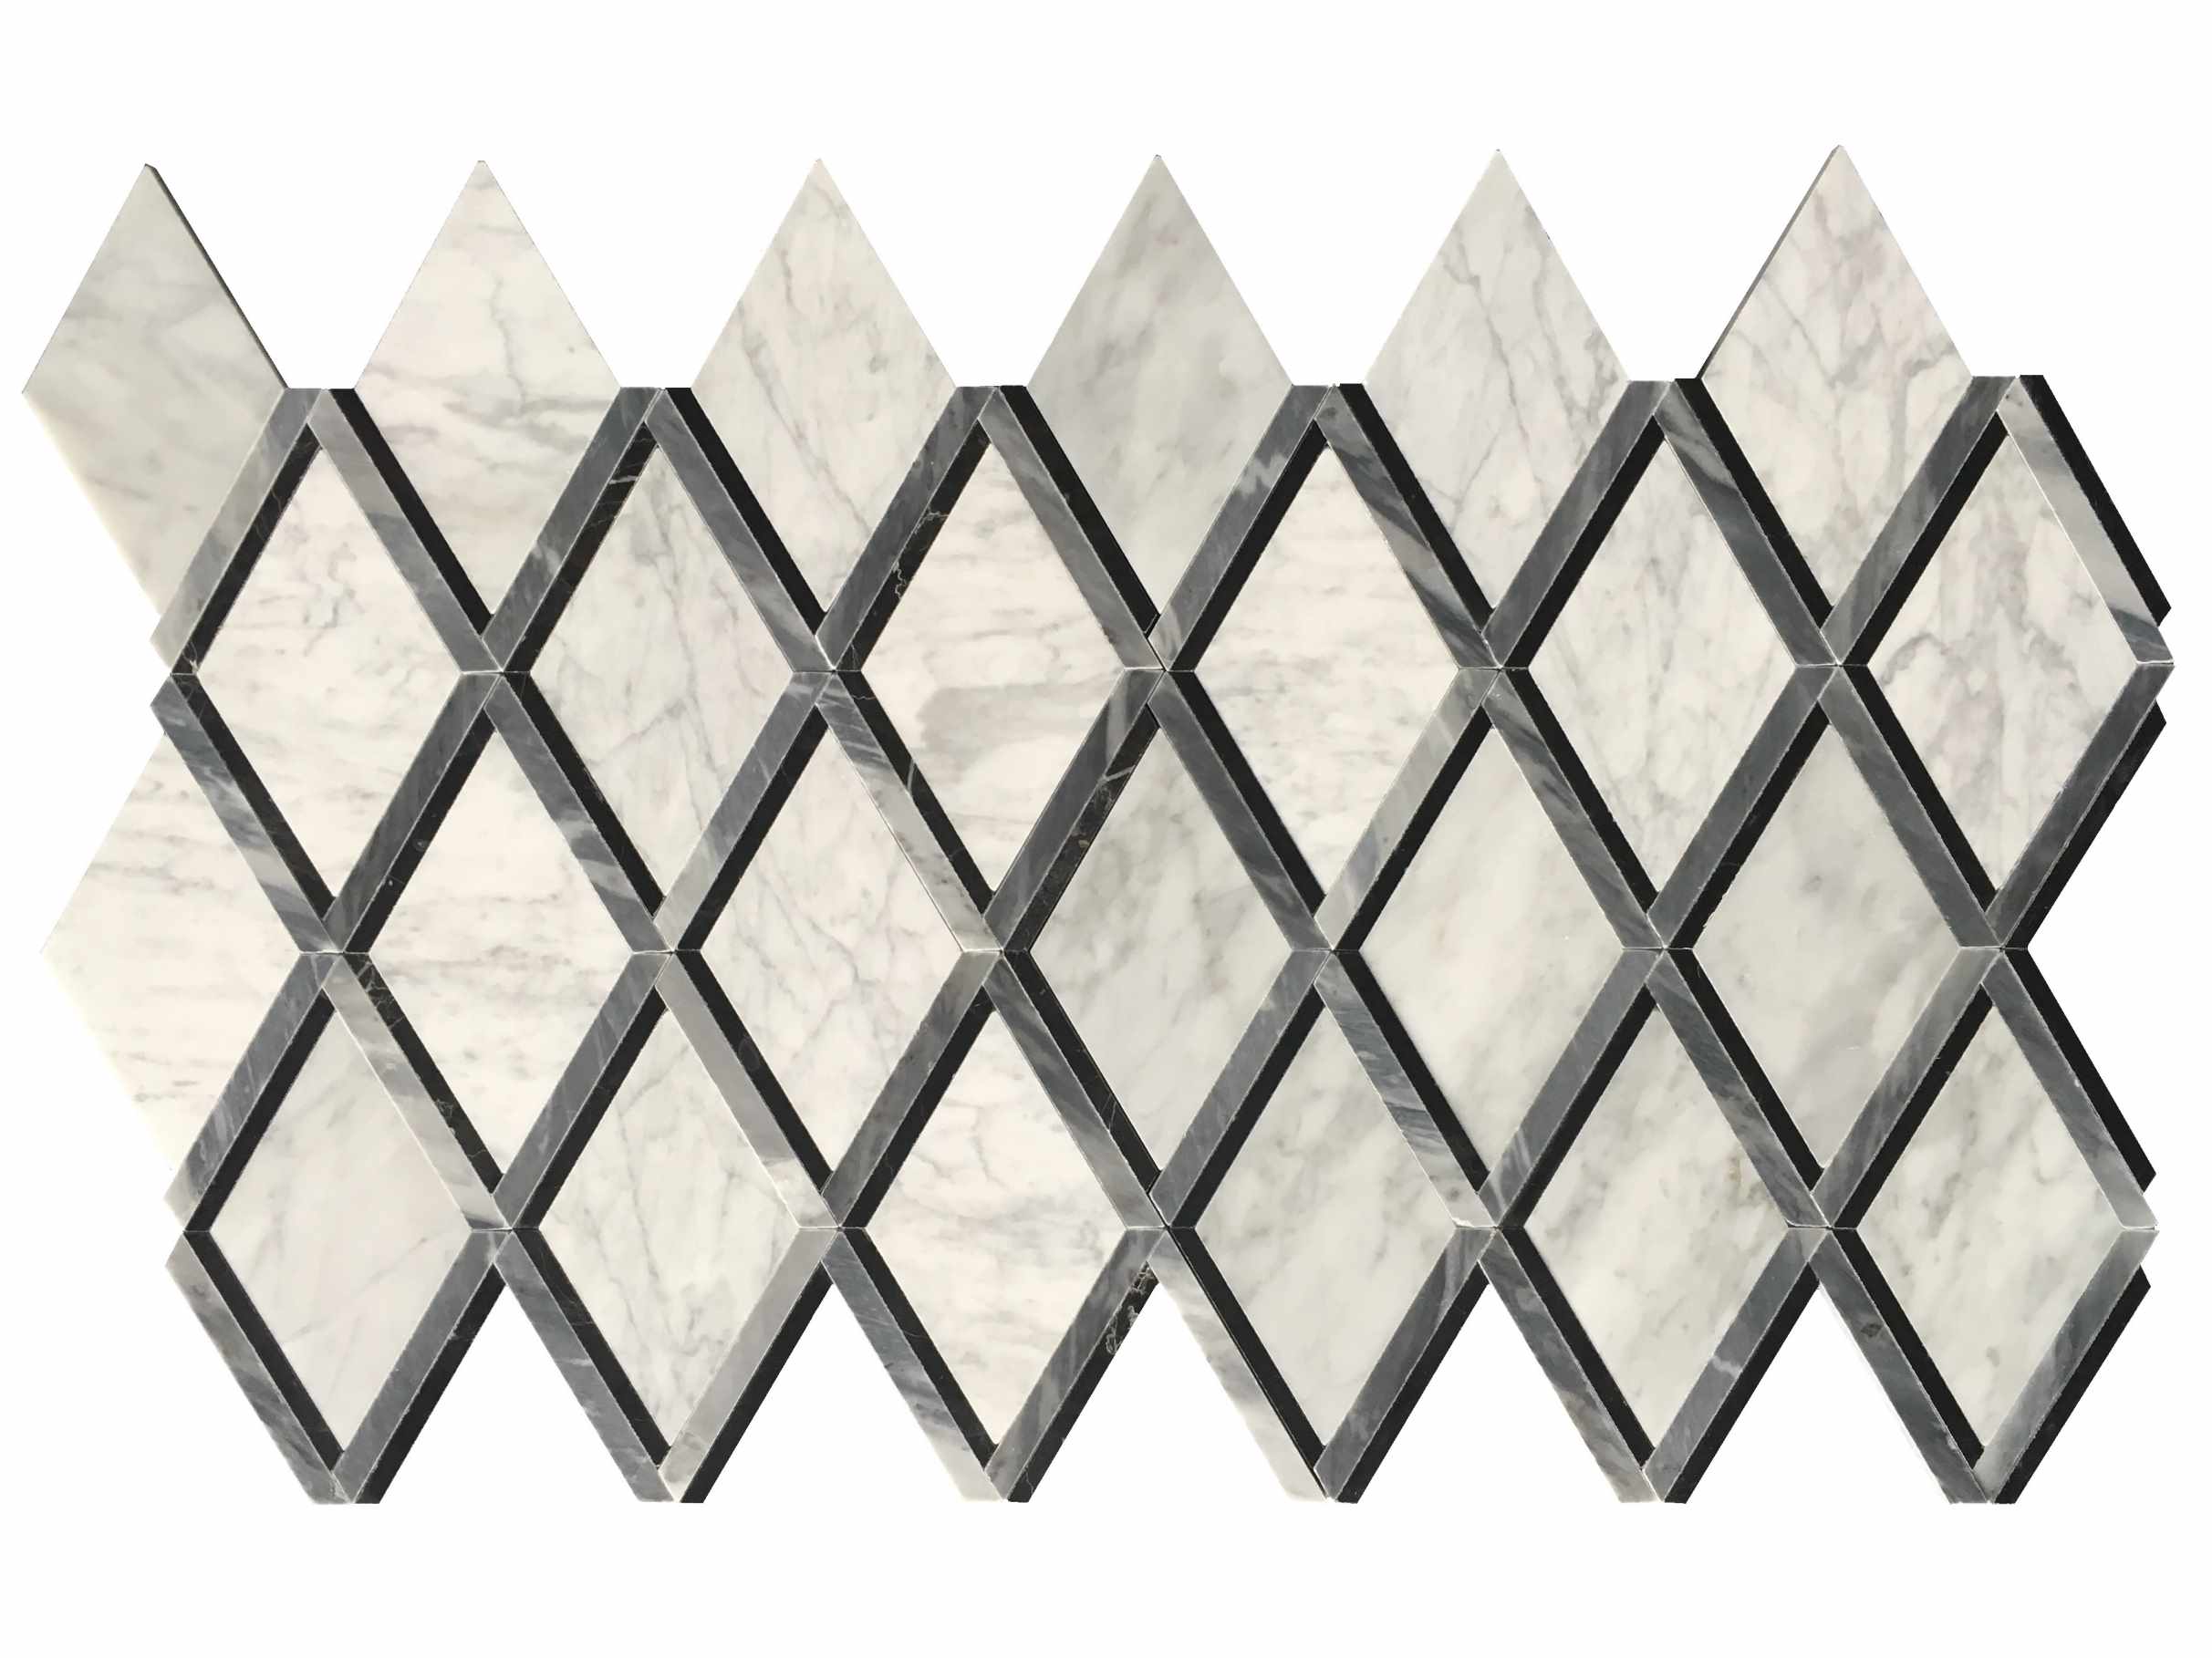 Natursten Mosaik Big Diamond Mosaik Tile Backsplash